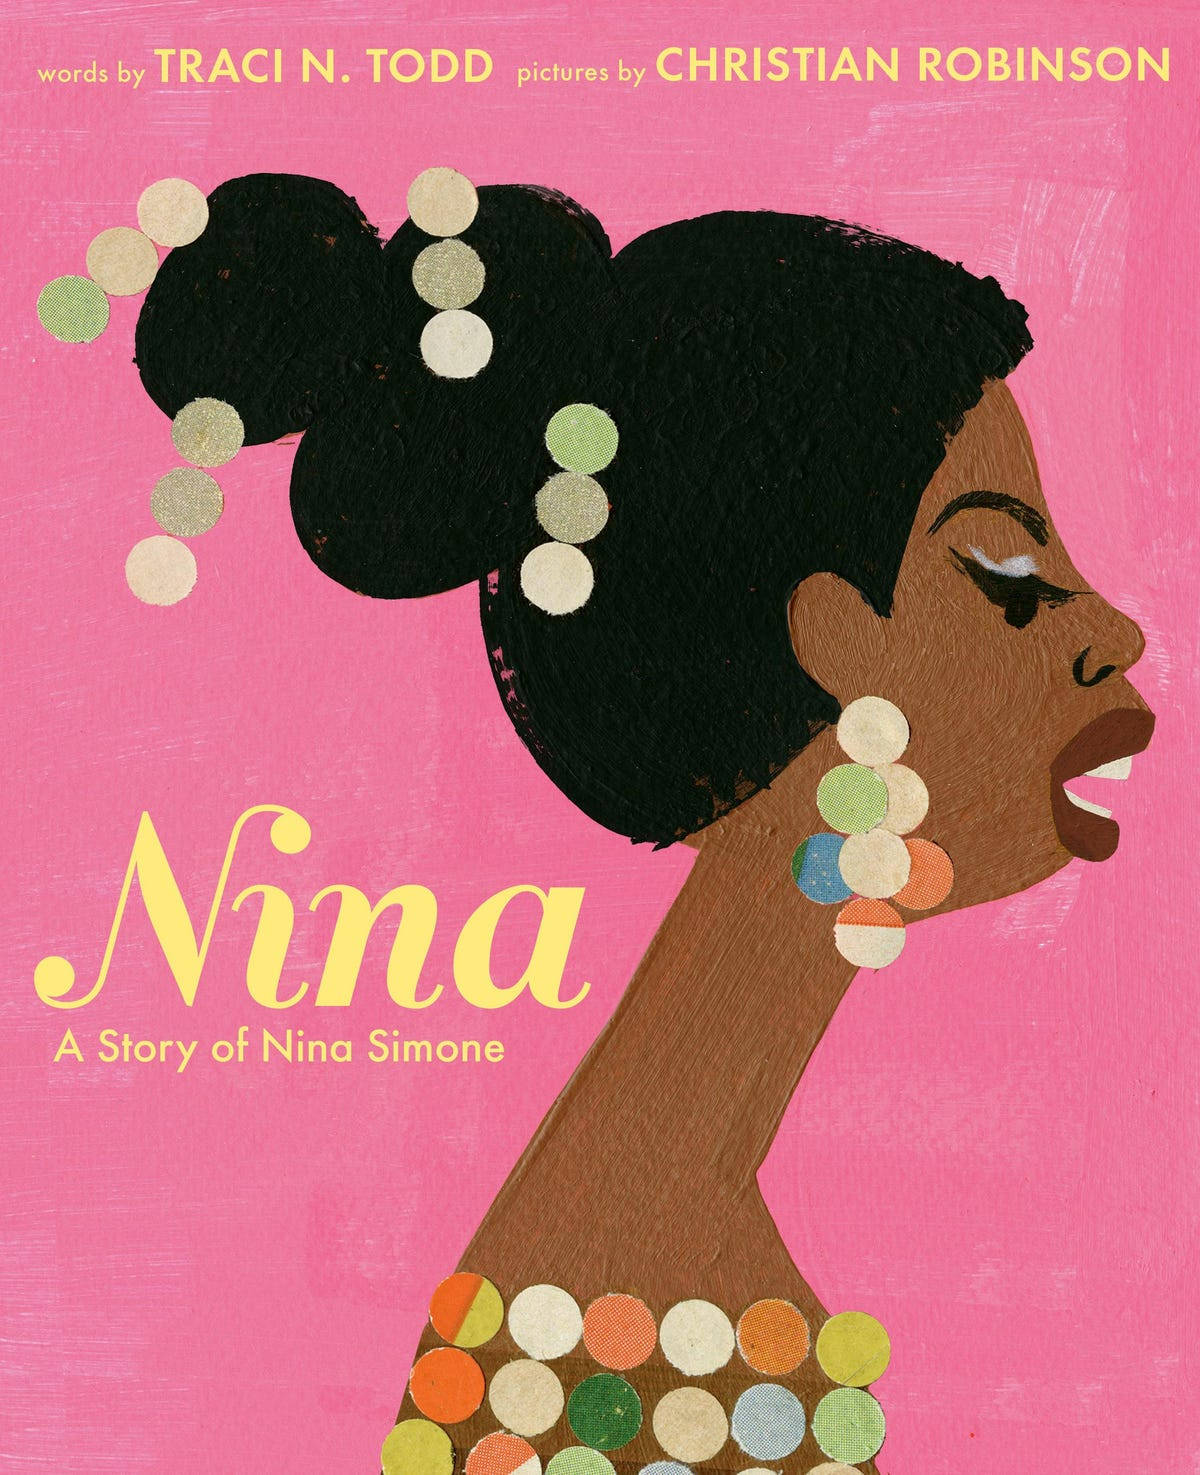 Nina Simone Autobiography Book Cover Wallpaper